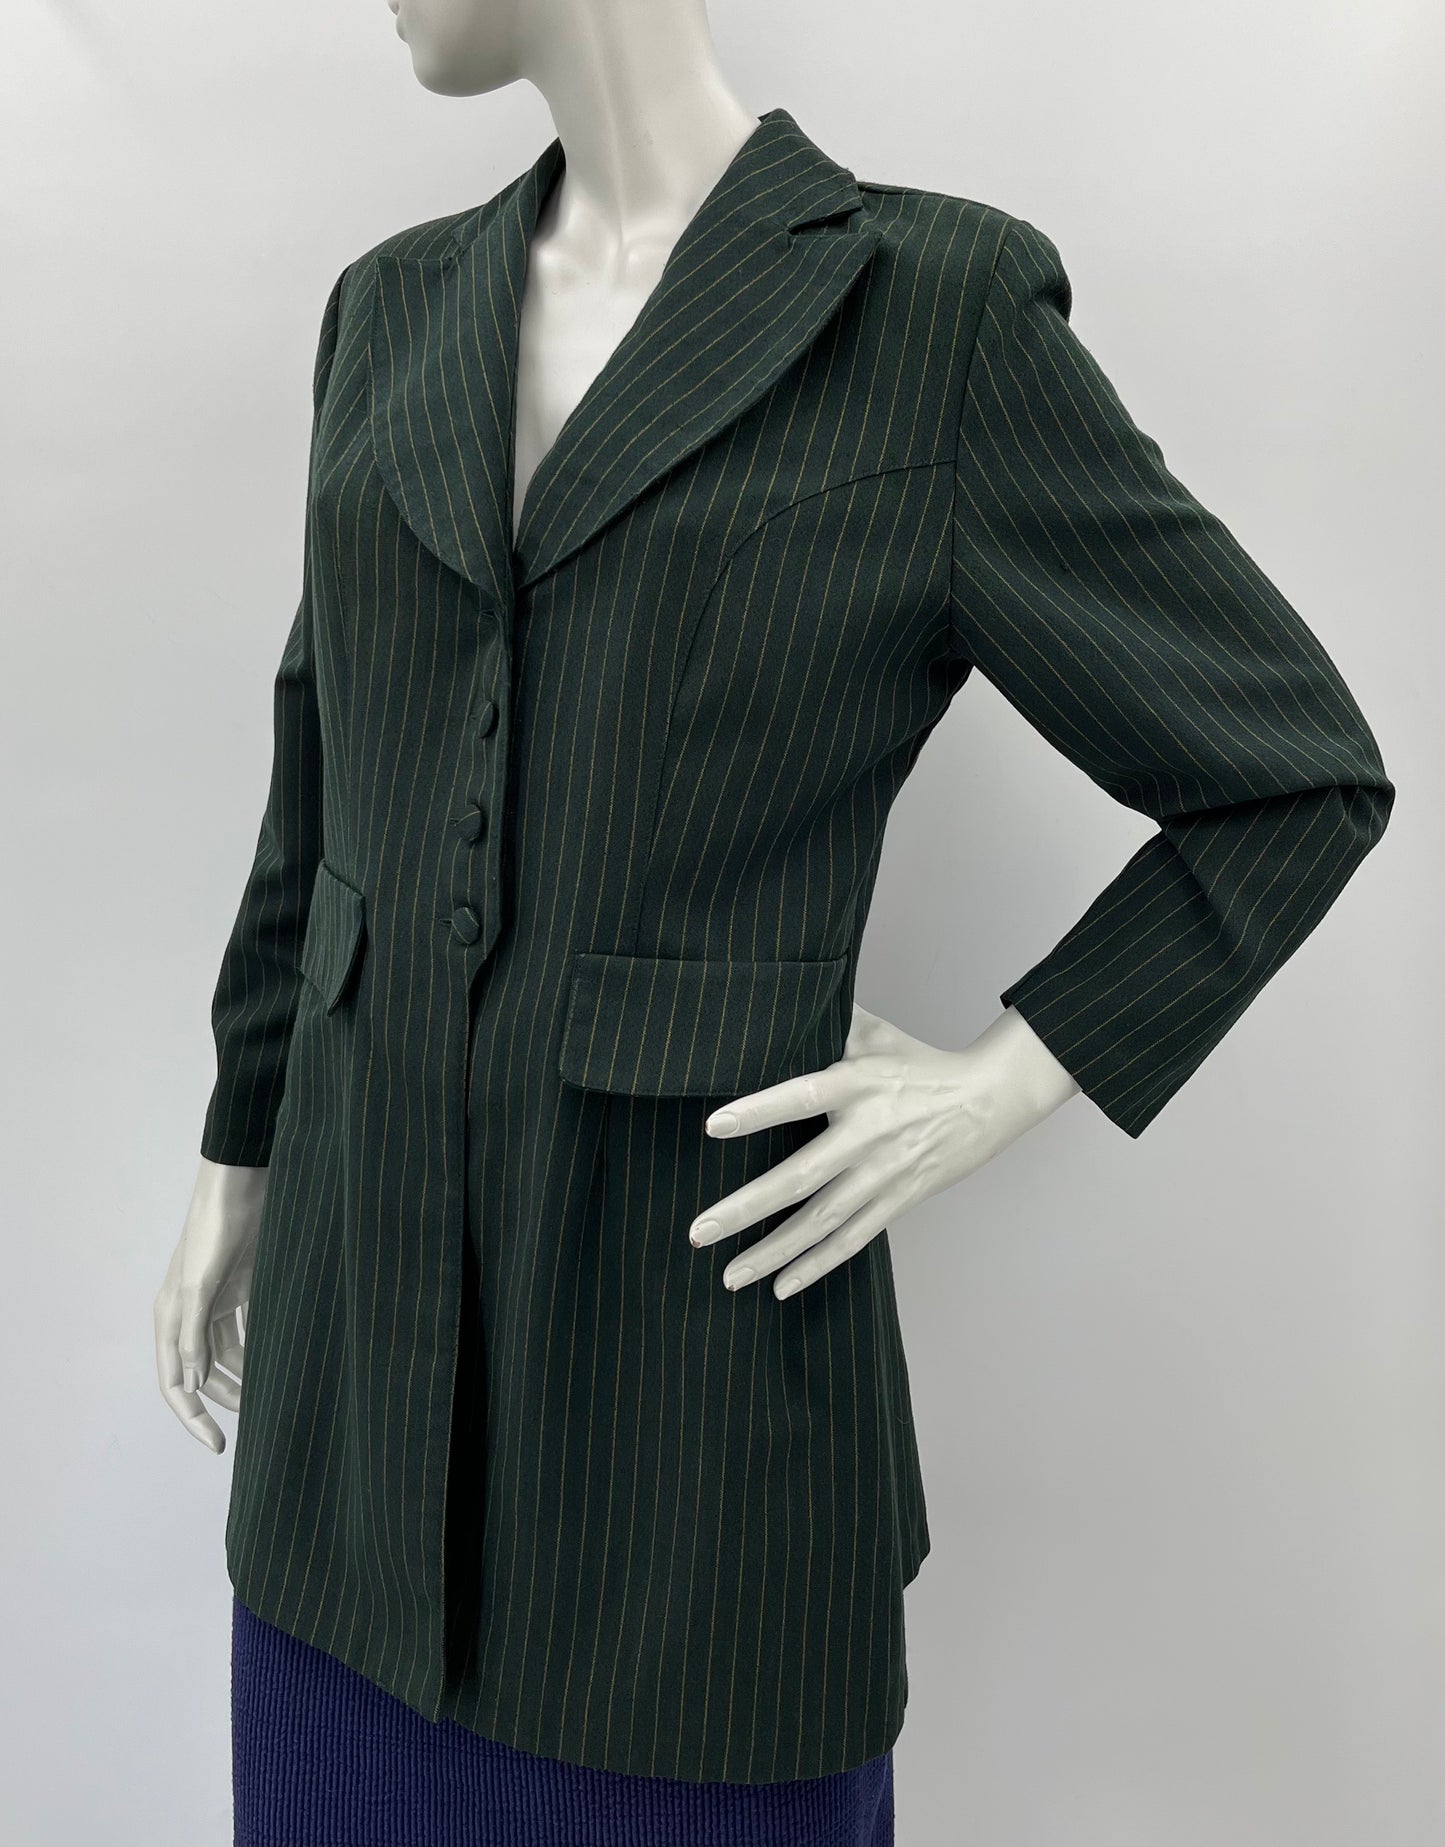 Tazzia, tummanvihreä pitkä jakku, 90-luku, koko 36-38